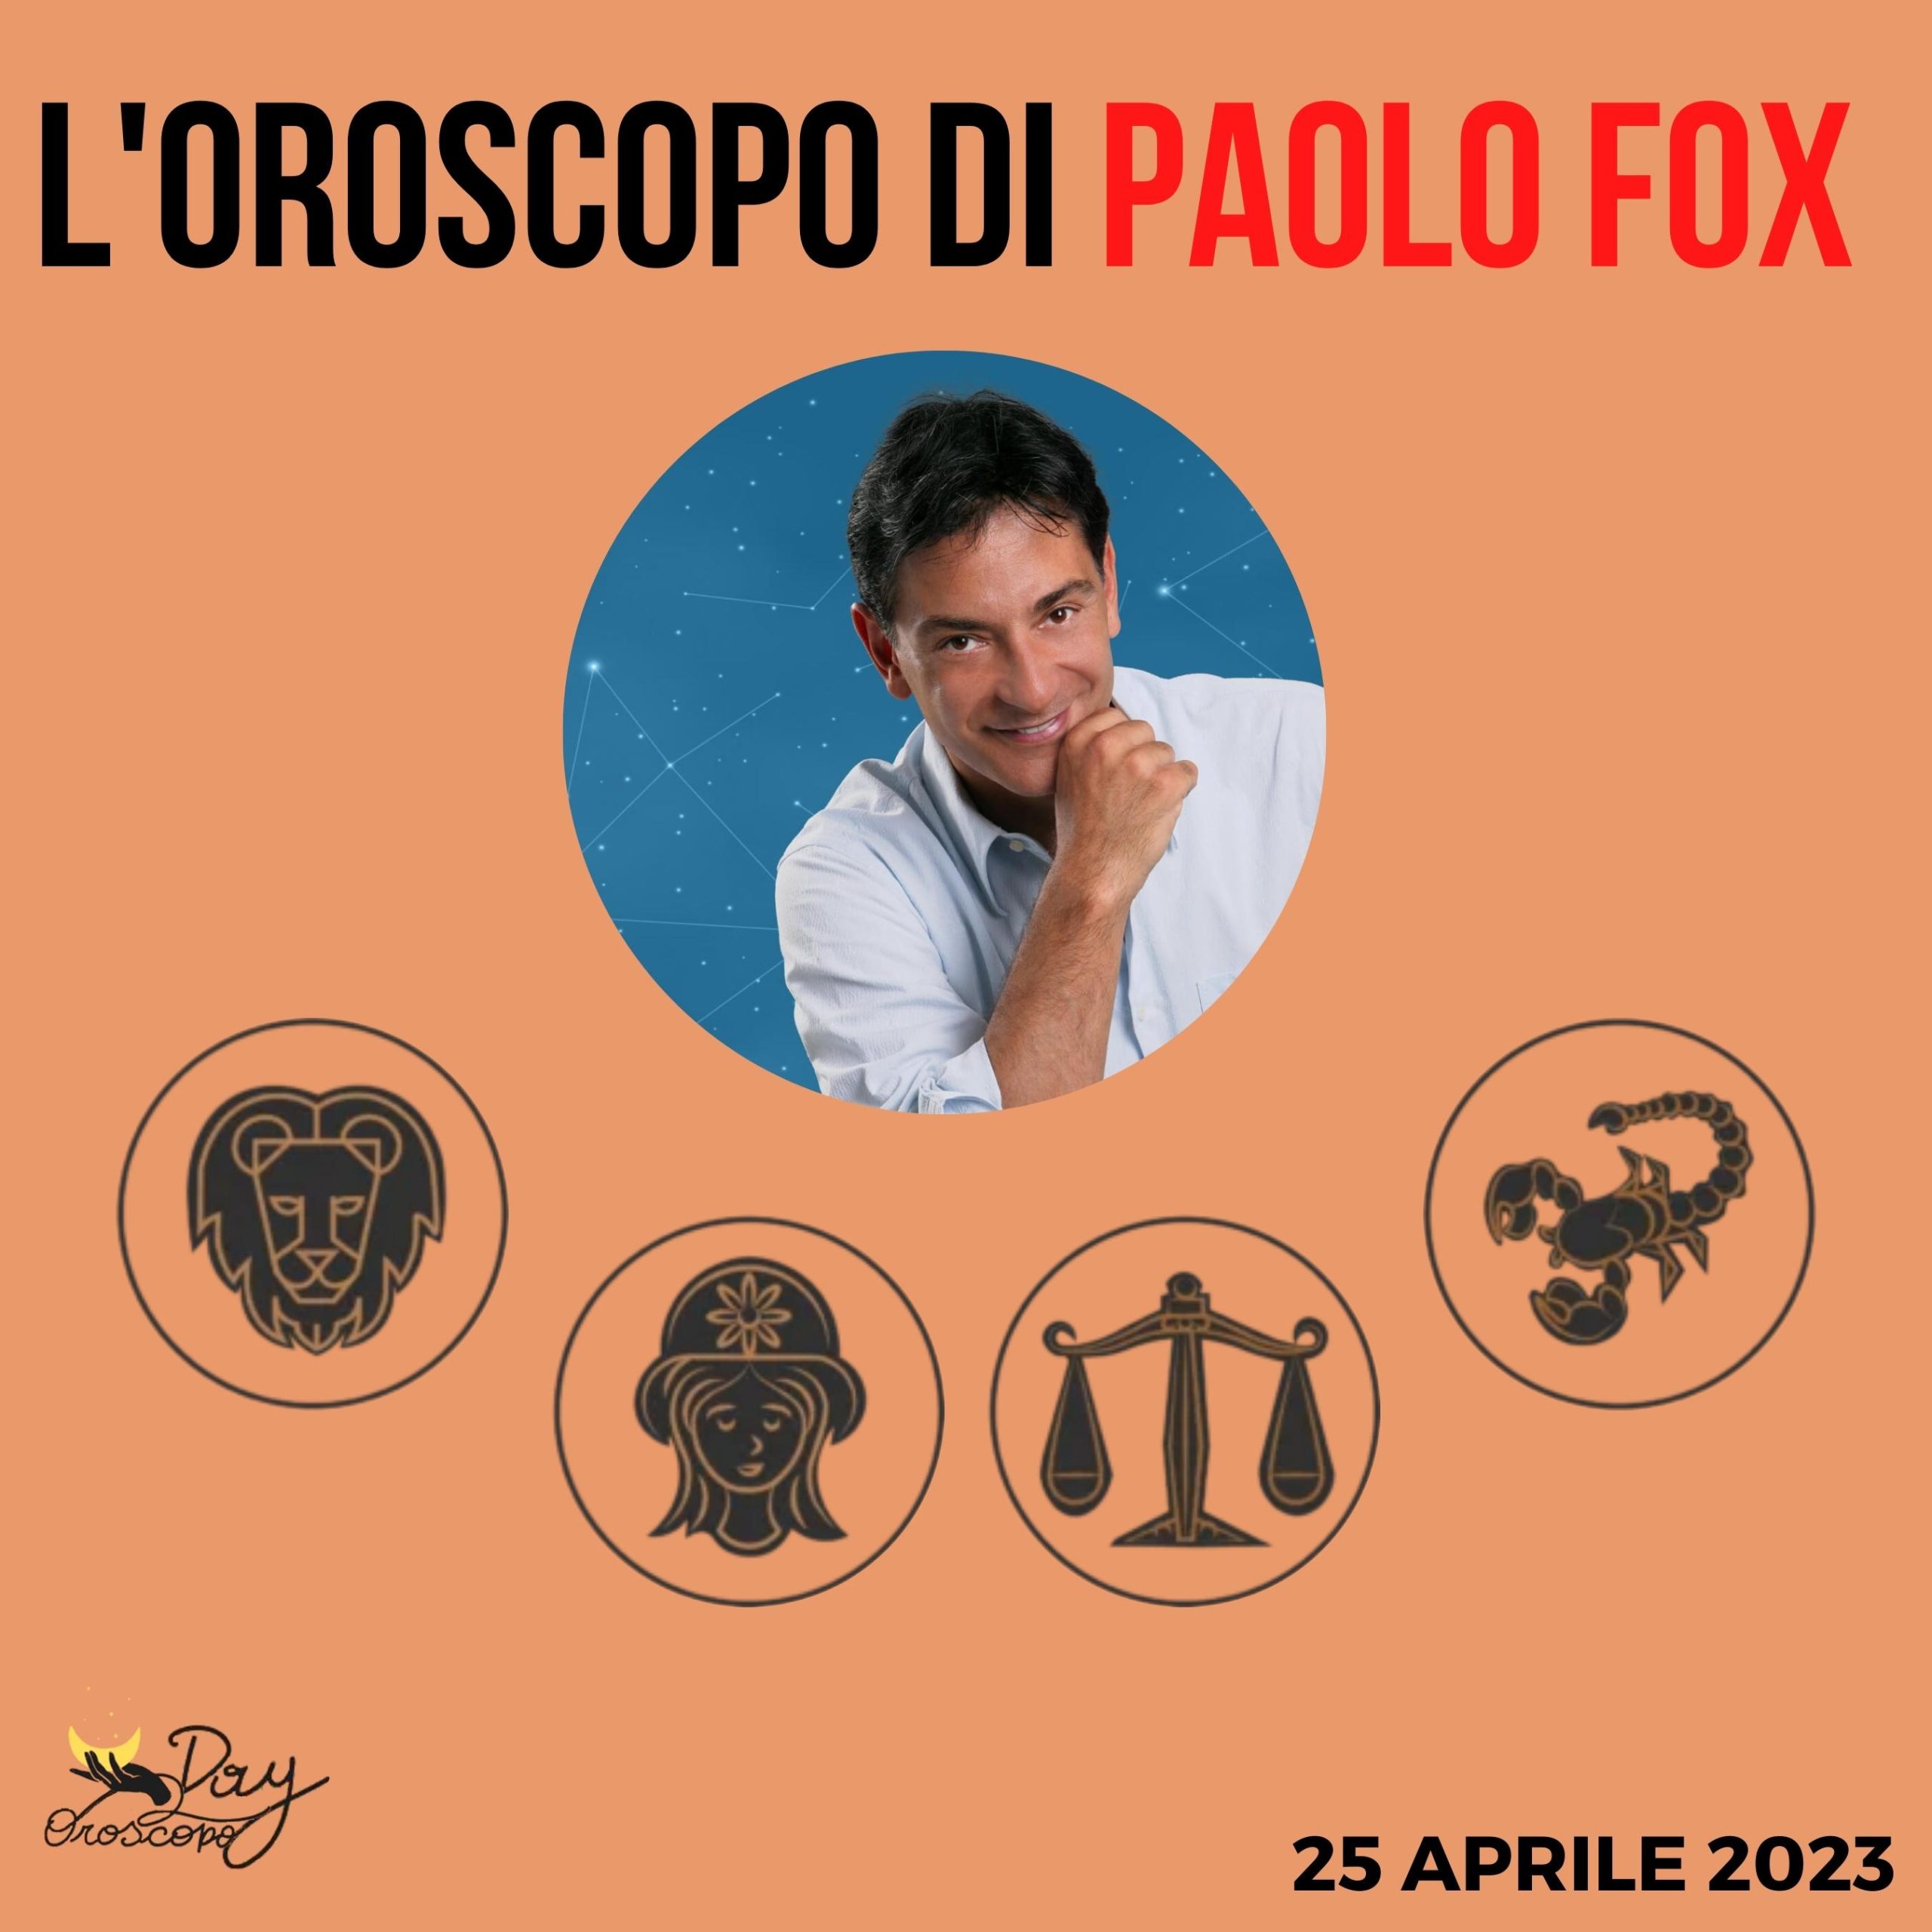 Oroscopo oggi domani Paolo Fox 25 aprile Leone Vergine Bilancia Scorpione